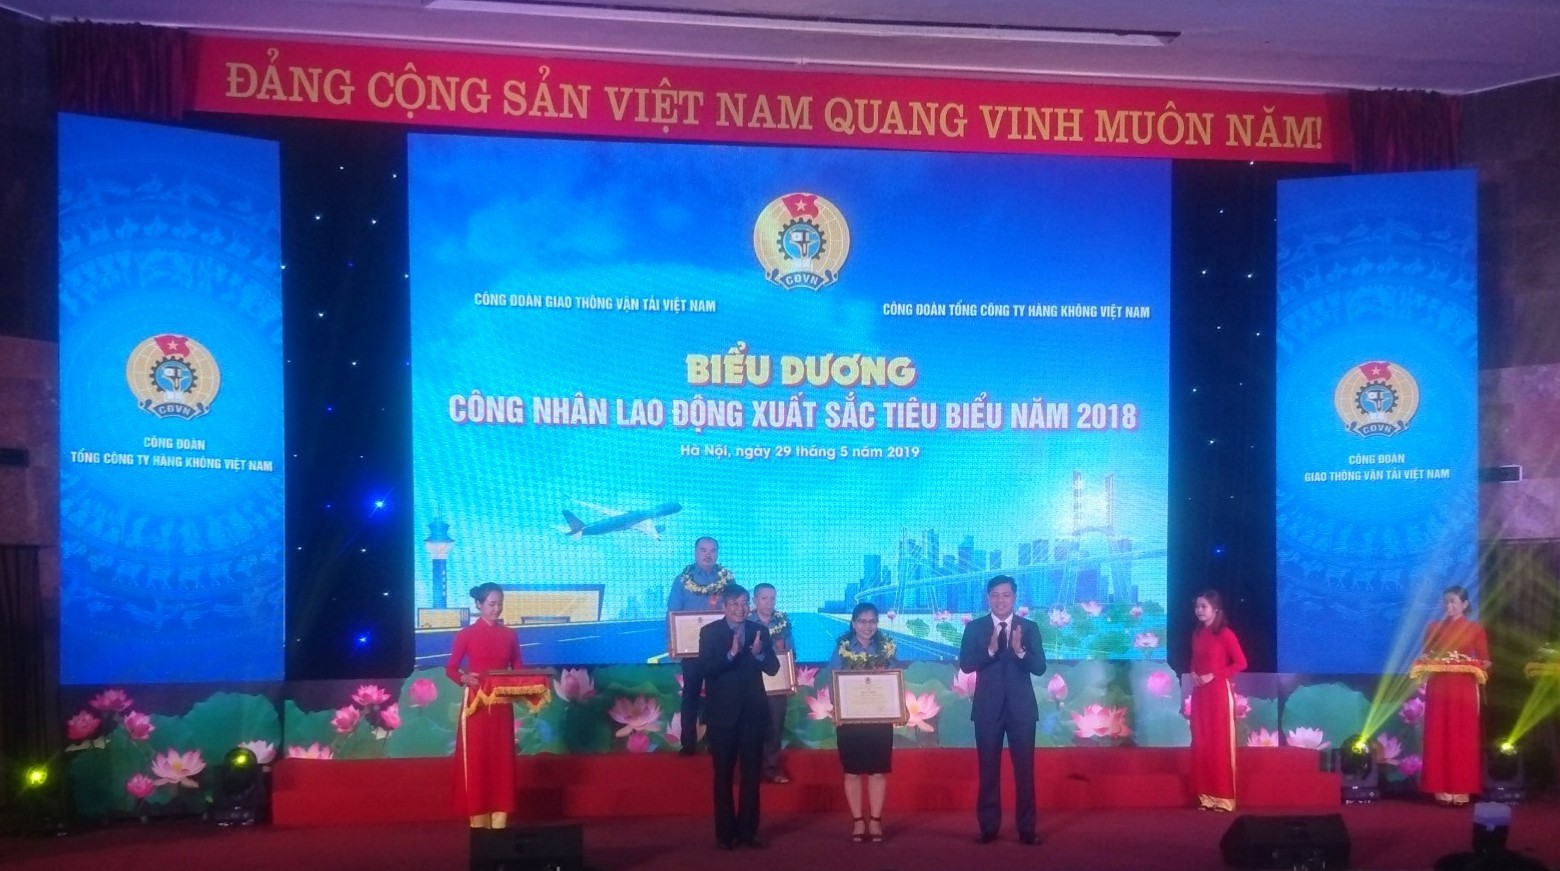 Nữ giảng viên Trần Thị Thanh Xuân vinh dự được biểu dương và tôn vinh tại  Hội nghị Biểu dương công nhân lao động xuất sắc, tiêu biểu năm 2018